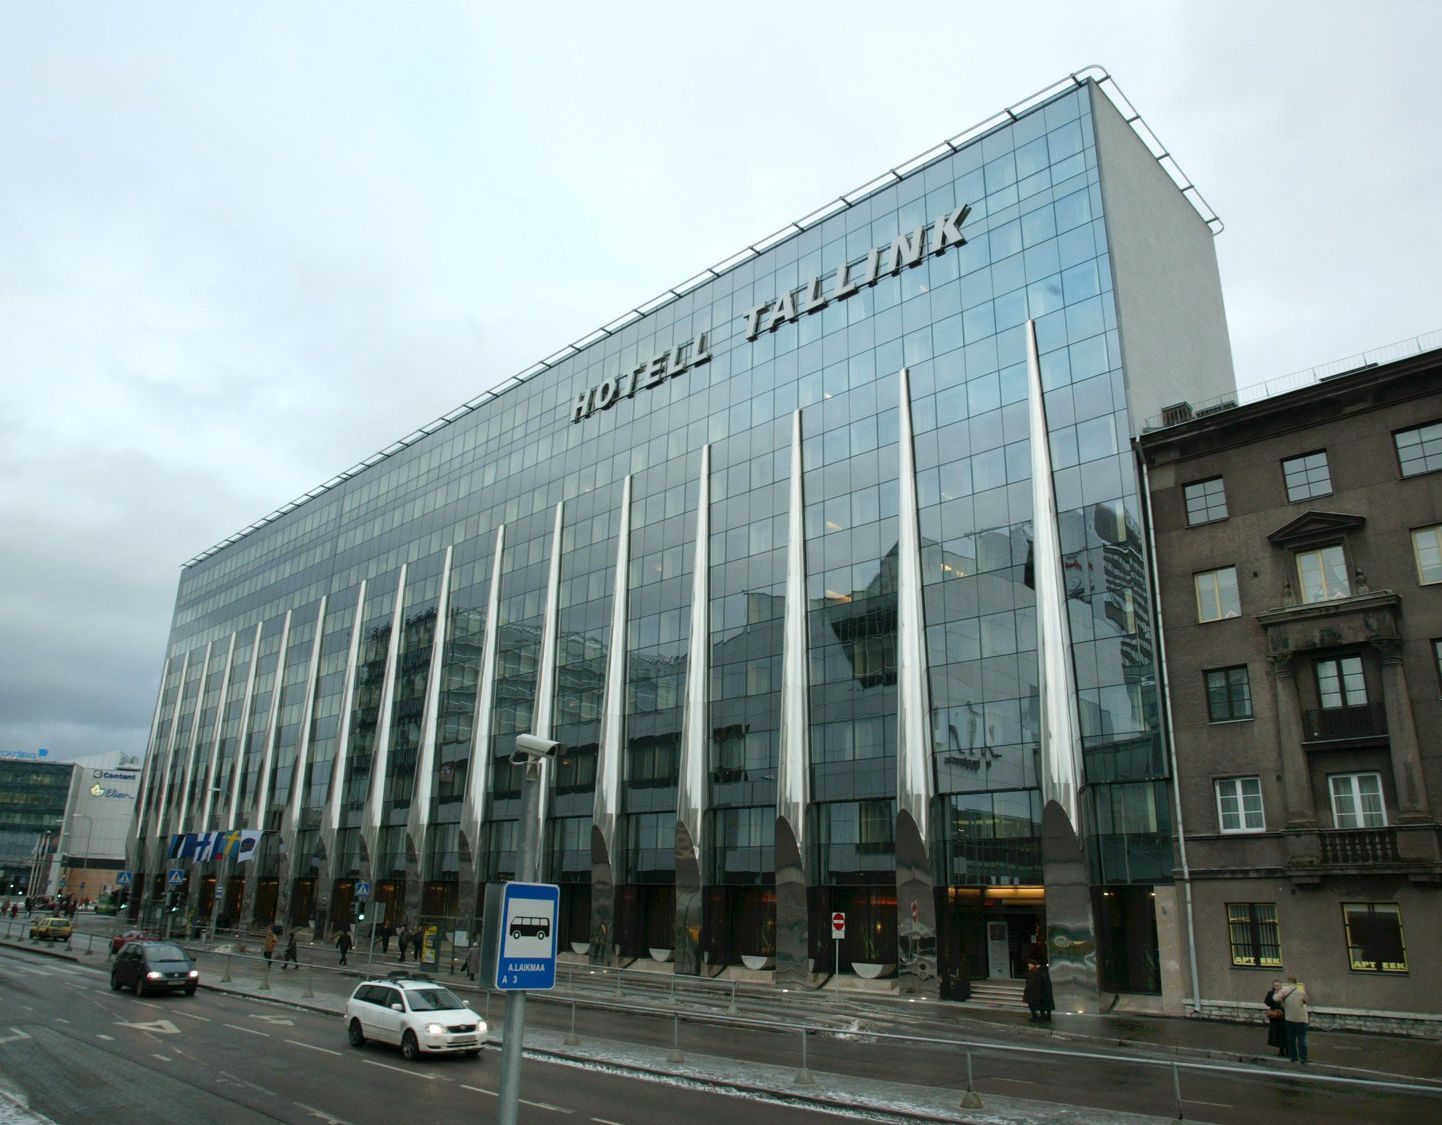 Tallinki hotell Tallinnas.